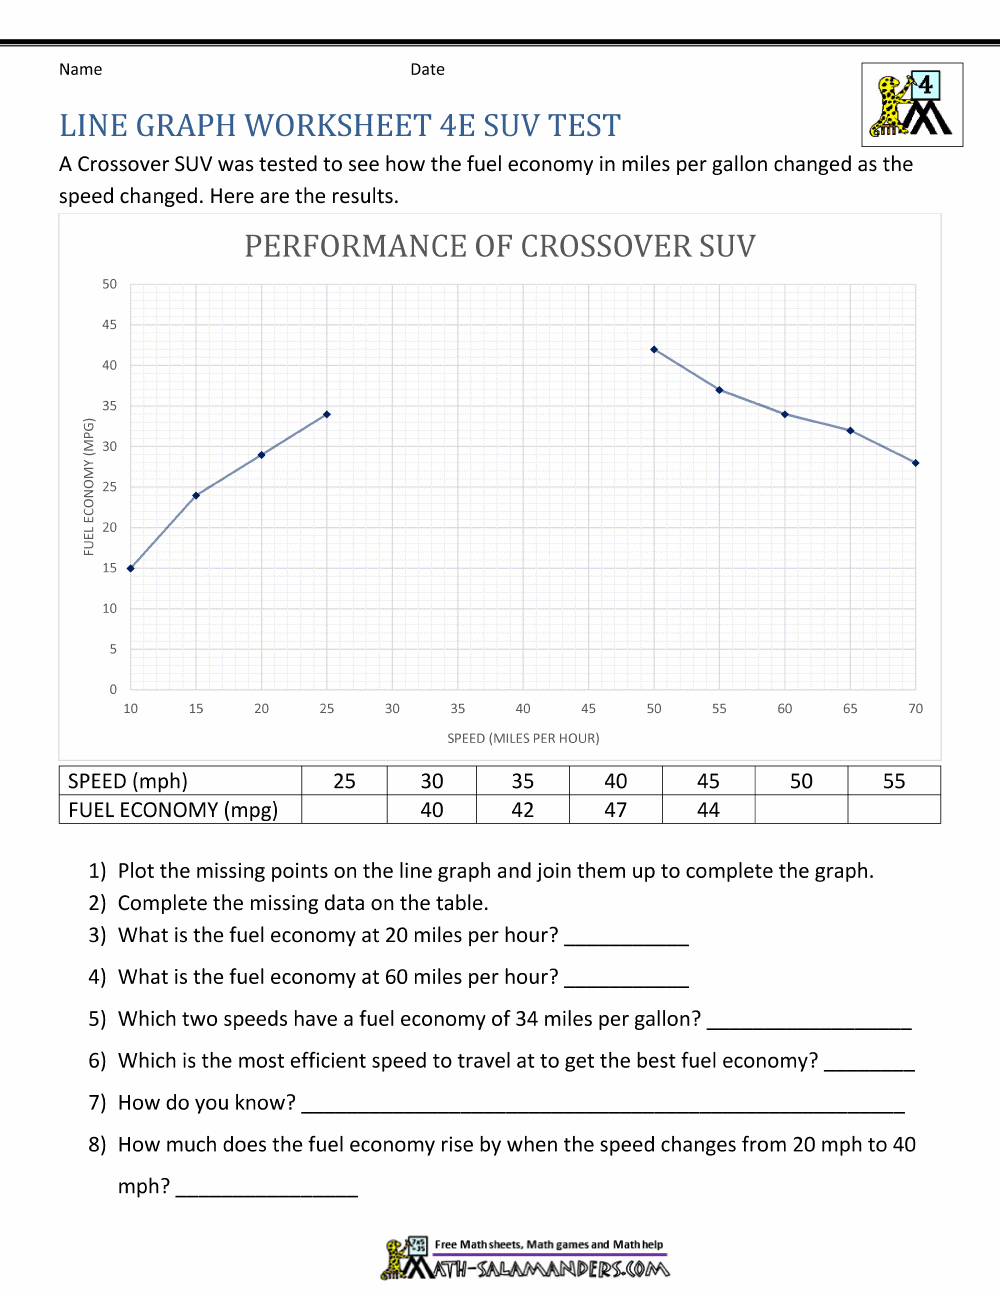 Line Graphs Worksheet 23th Grade Within Vertical Line Test Worksheet